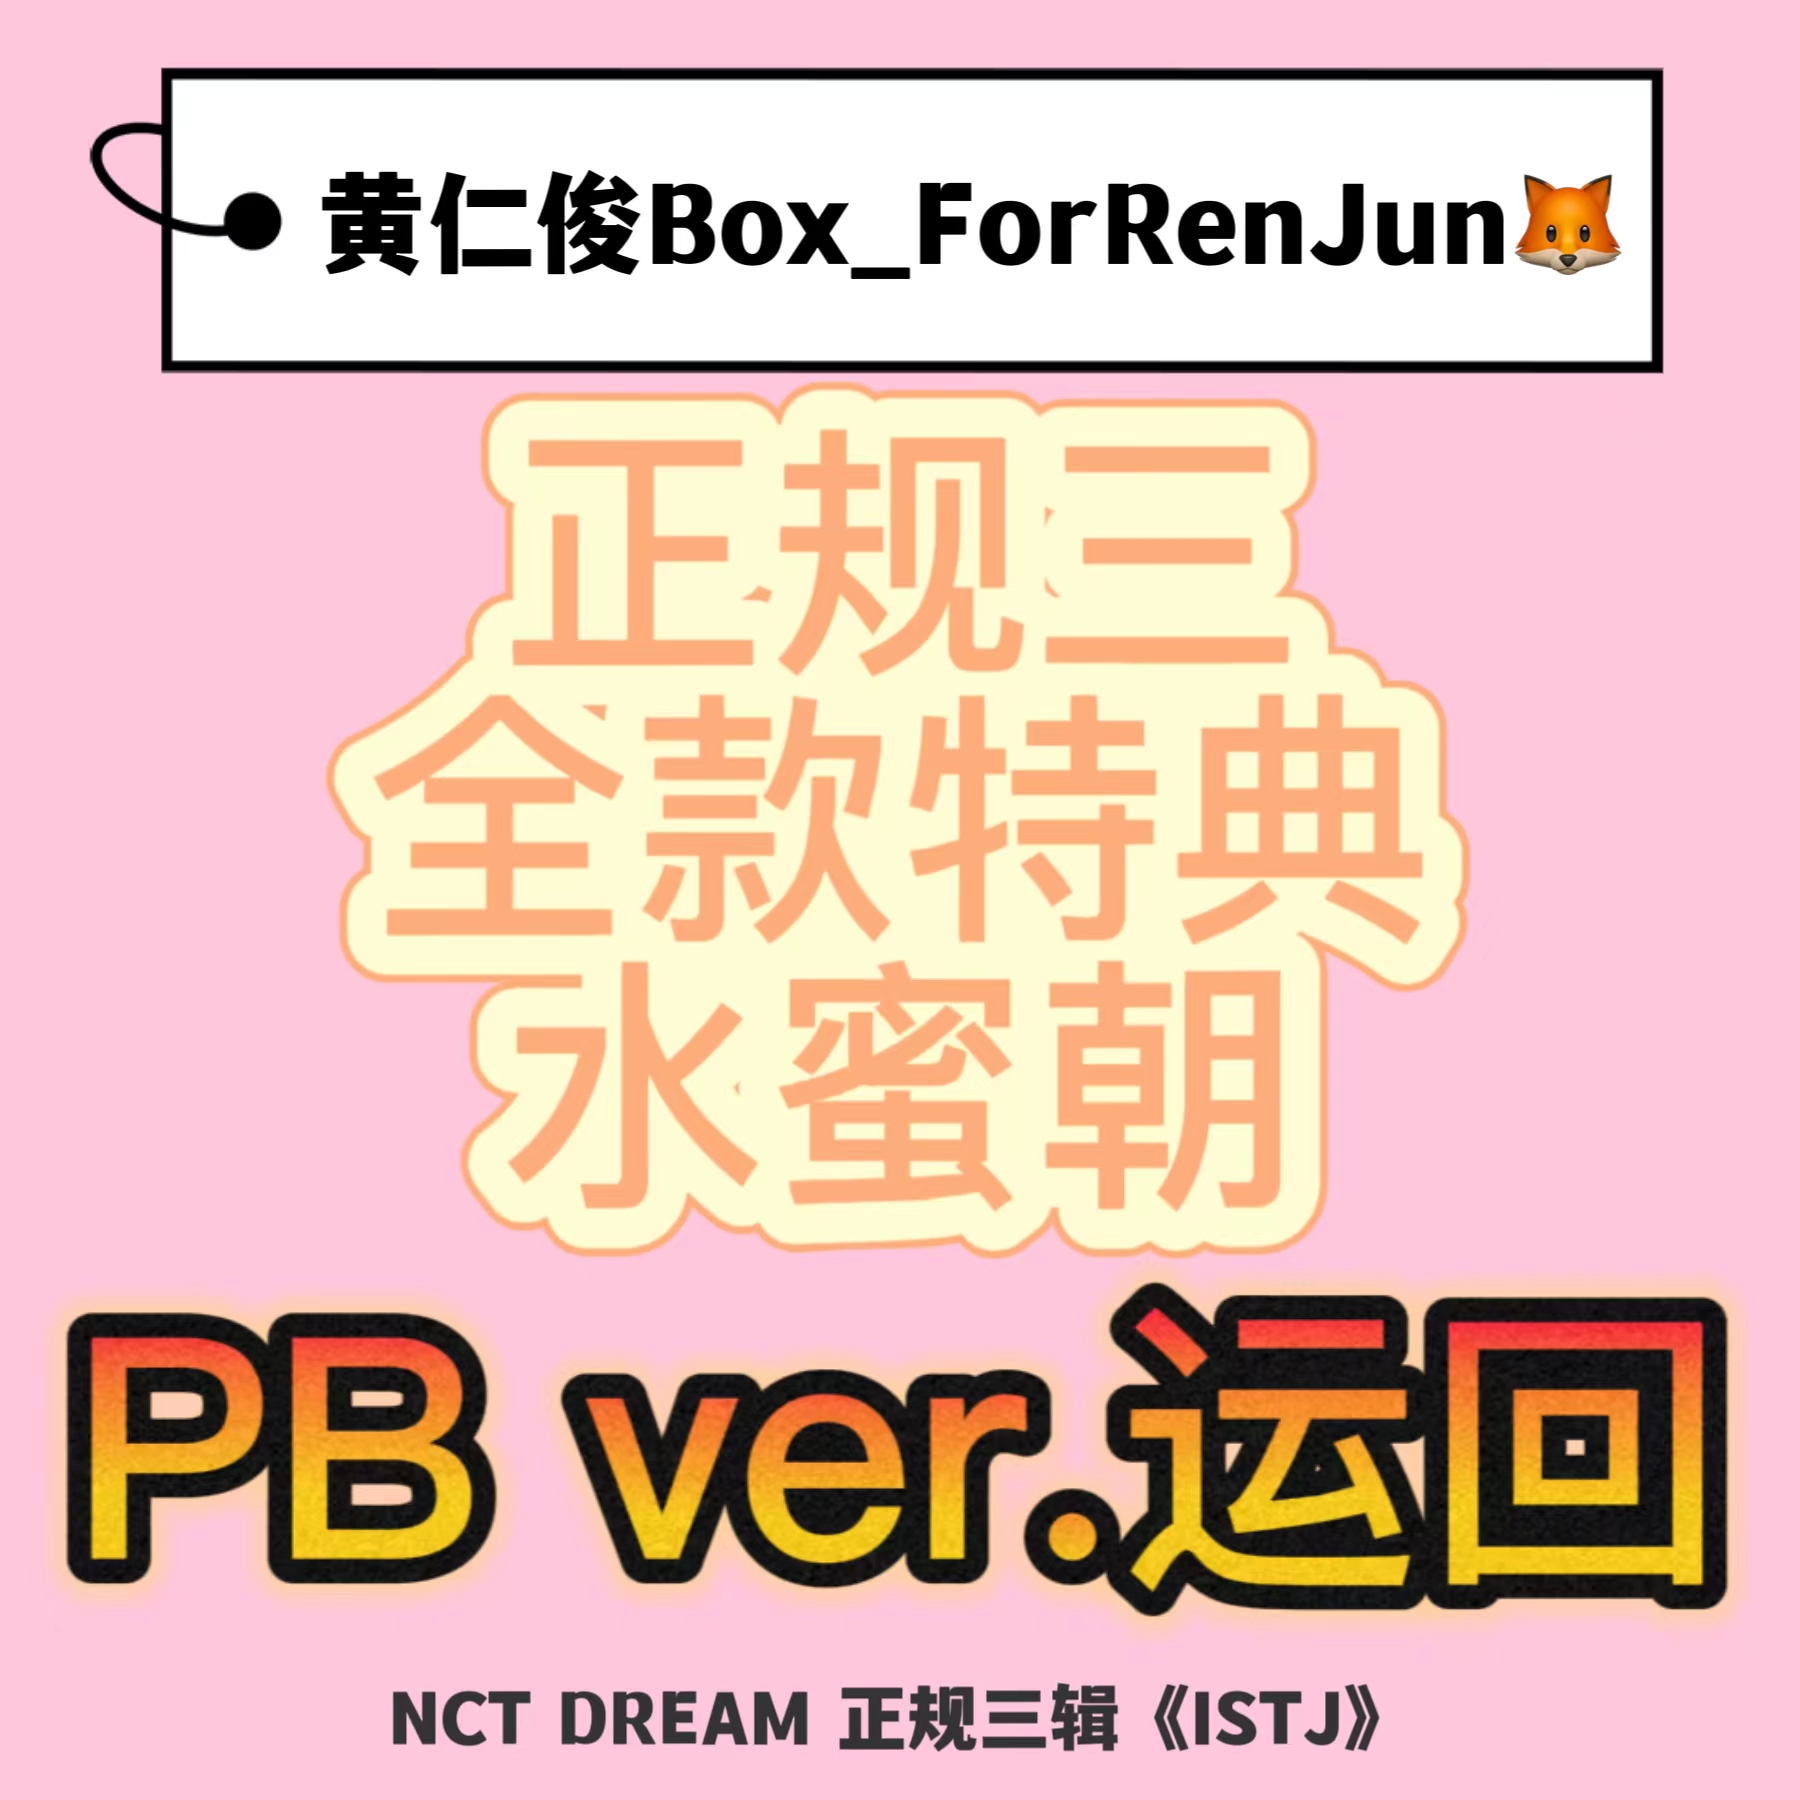 [全款 水蜜朝 特典专] [Ktown4u Special Gift] NCT DREAM - 正规3辑 [ISTJ] (Photobook Ver.) (随机版本)_黄仁俊吧RenJunBar